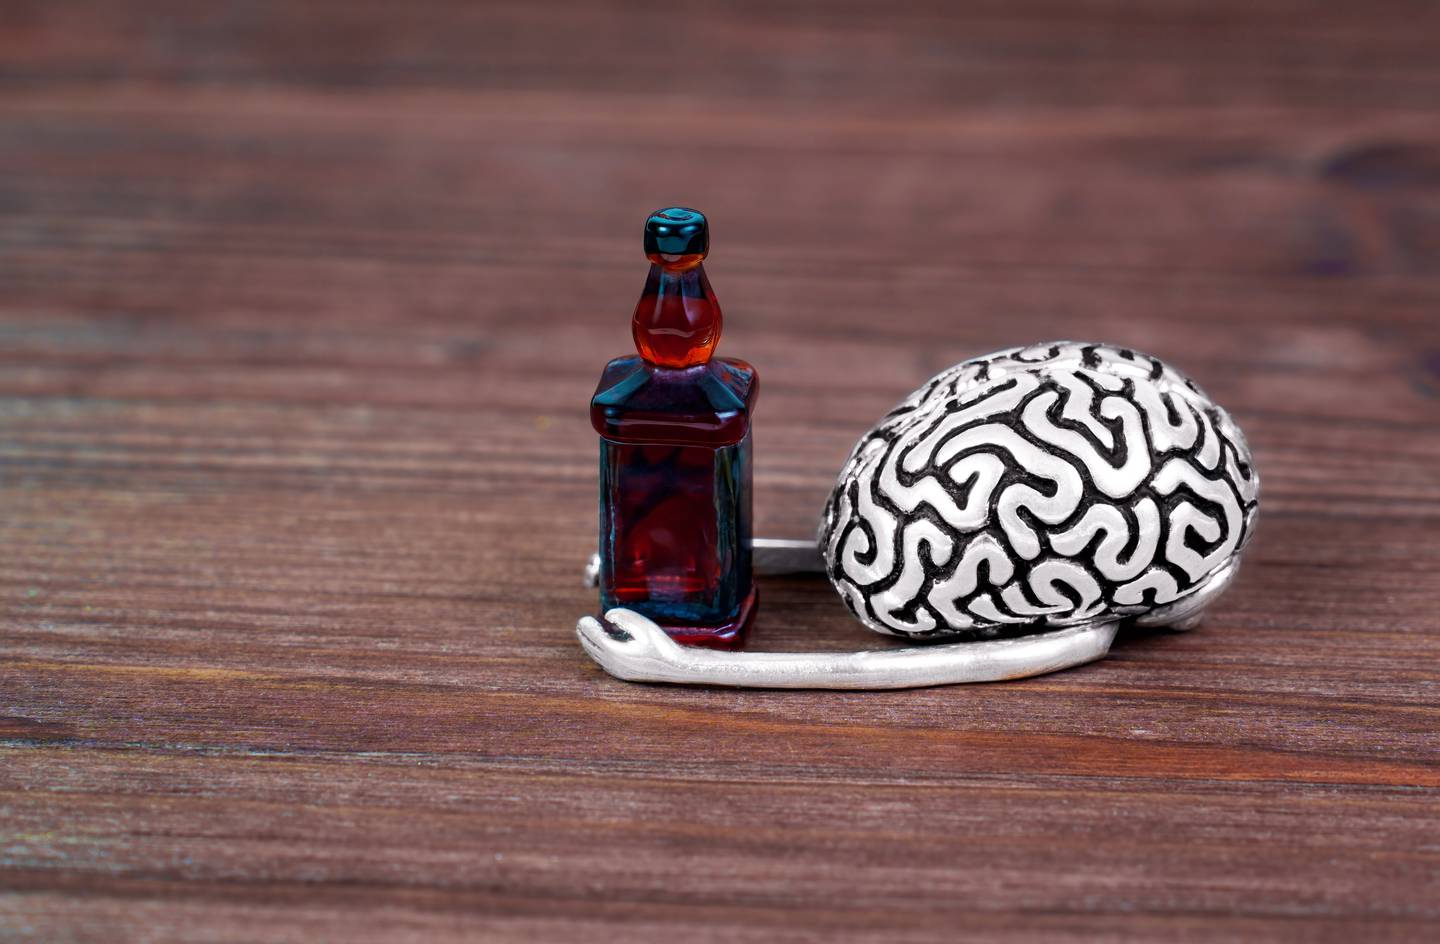 El cerebro adolescente es más vulnerable a diferentes adicciones.

Imagen: Shuttestock